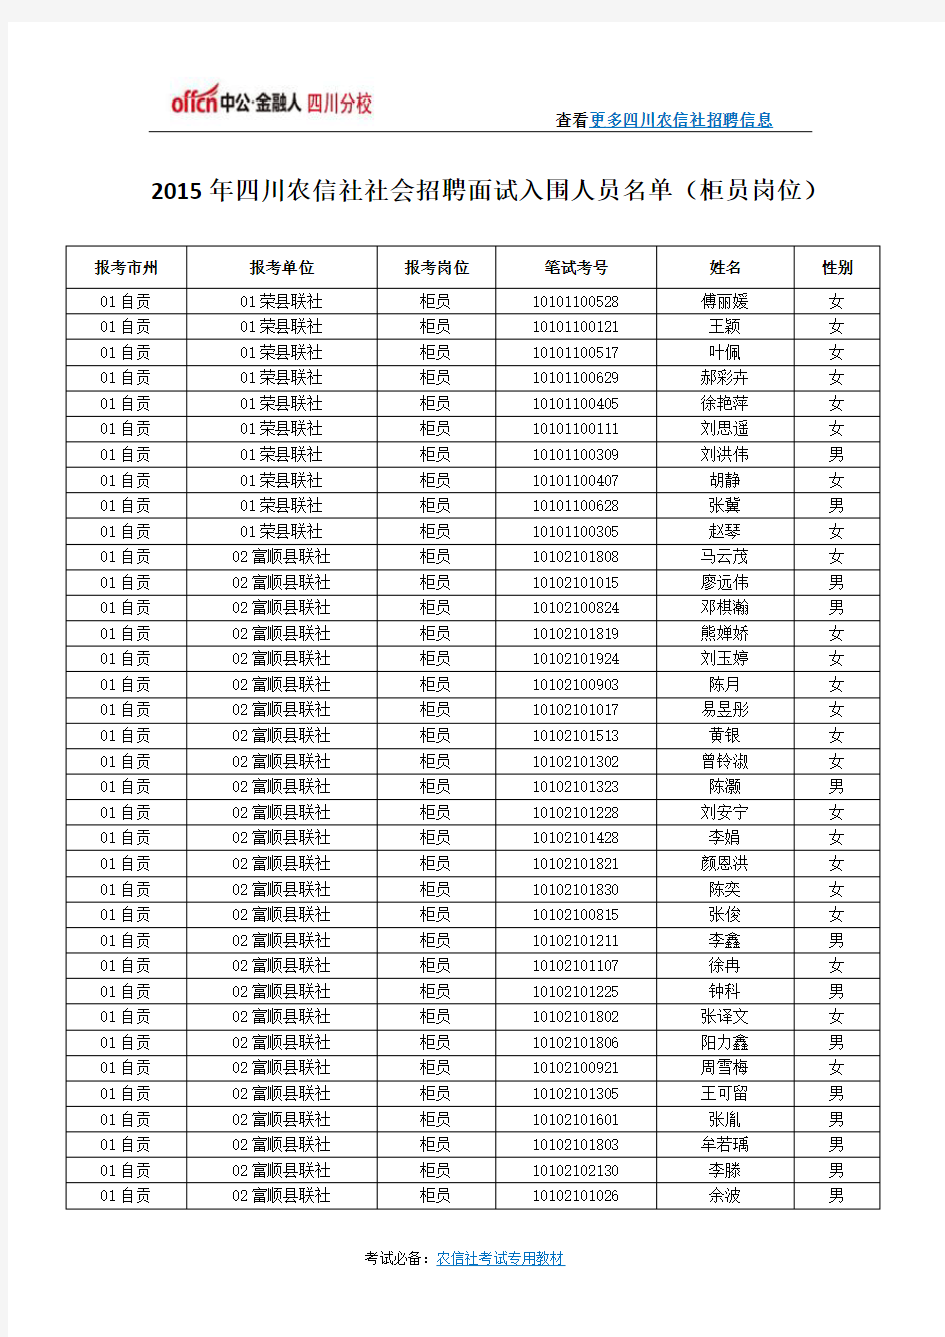 2015年四川农信社社会招聘面试入围人员名单(柜员岗位)